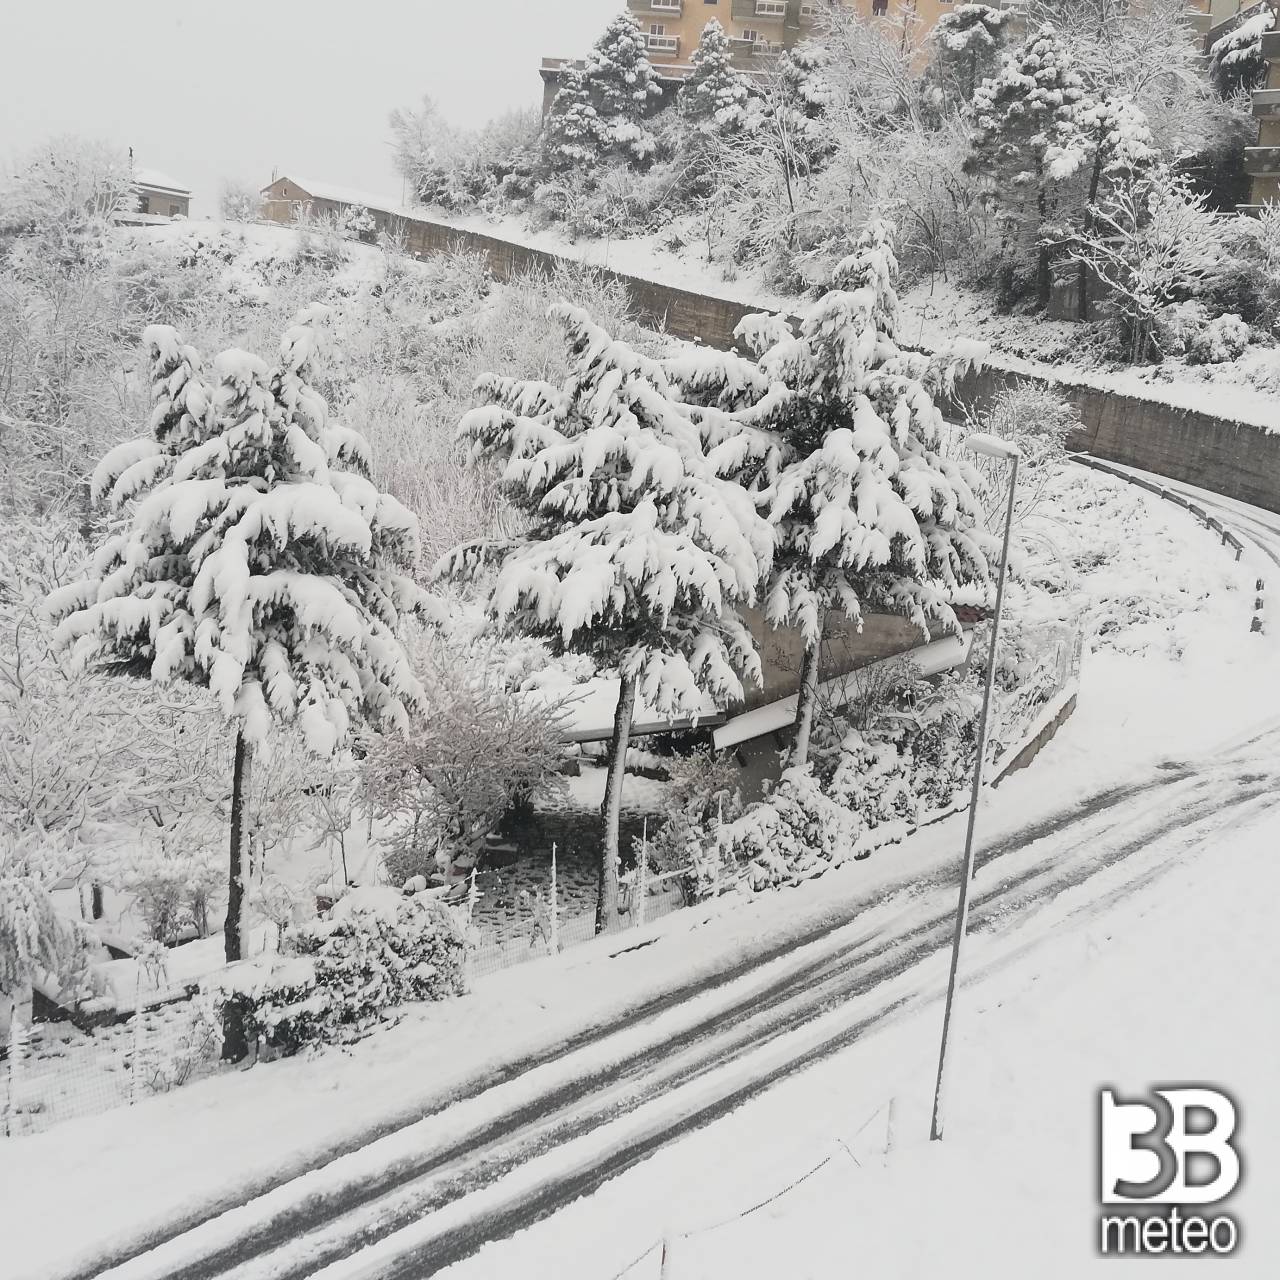 Cronaca Meteo Diretta Pieno Inverno Sull Italia Con Freddo E Neve In Collina Situazione E Previsioni 3b Meteo